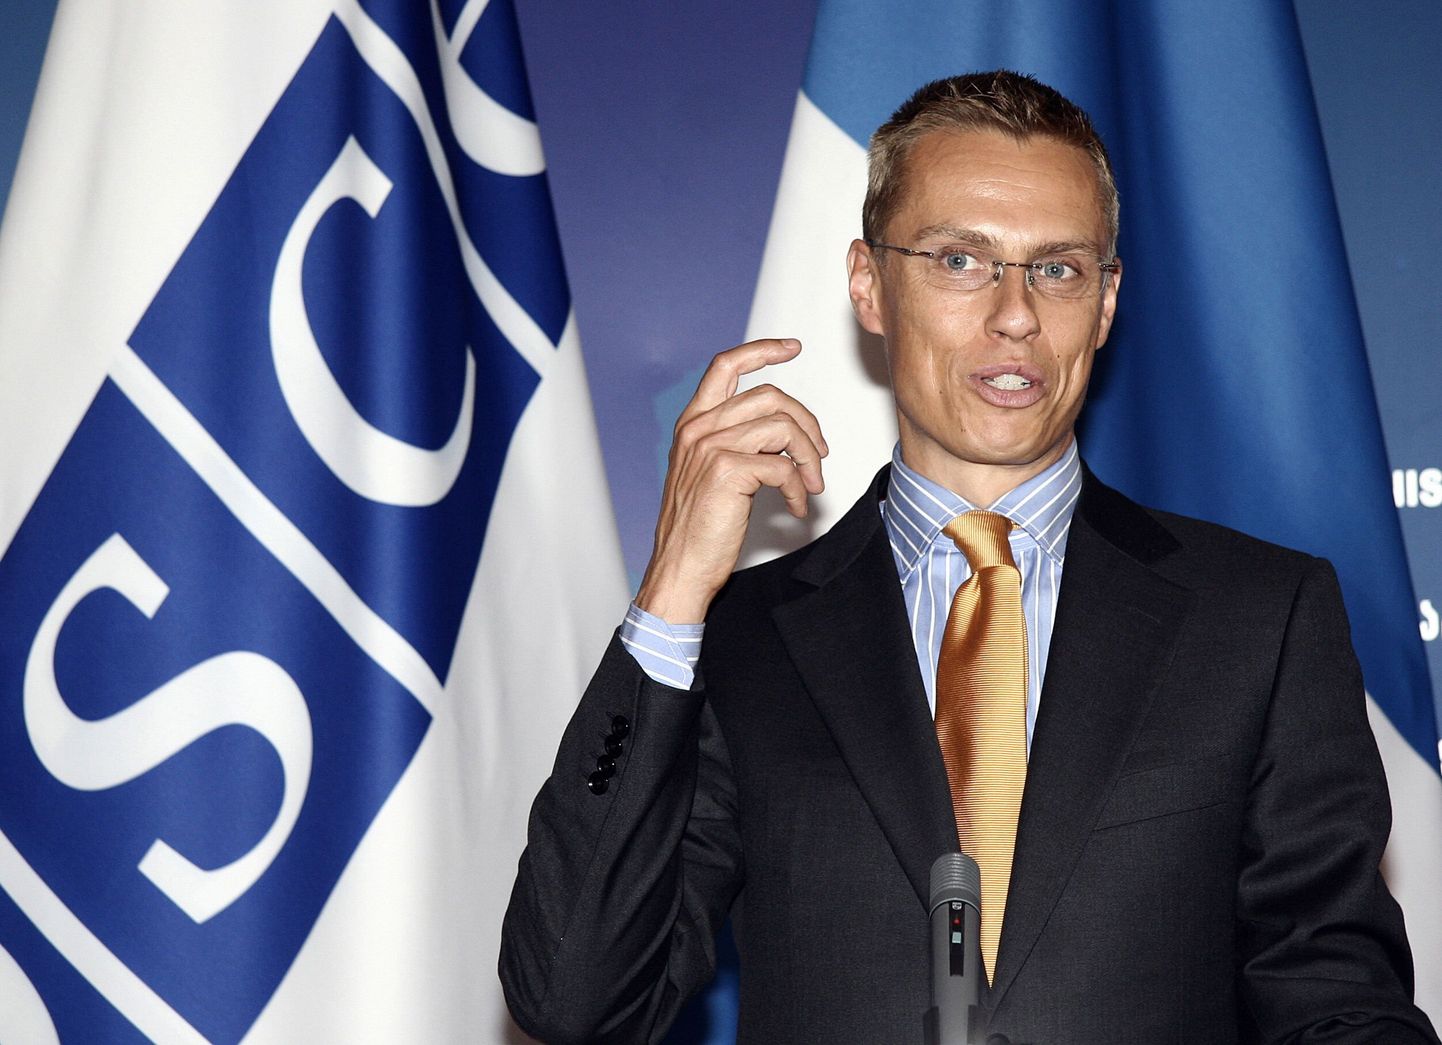 Soome väliminister ja OSCE juht Alexander Stubb.